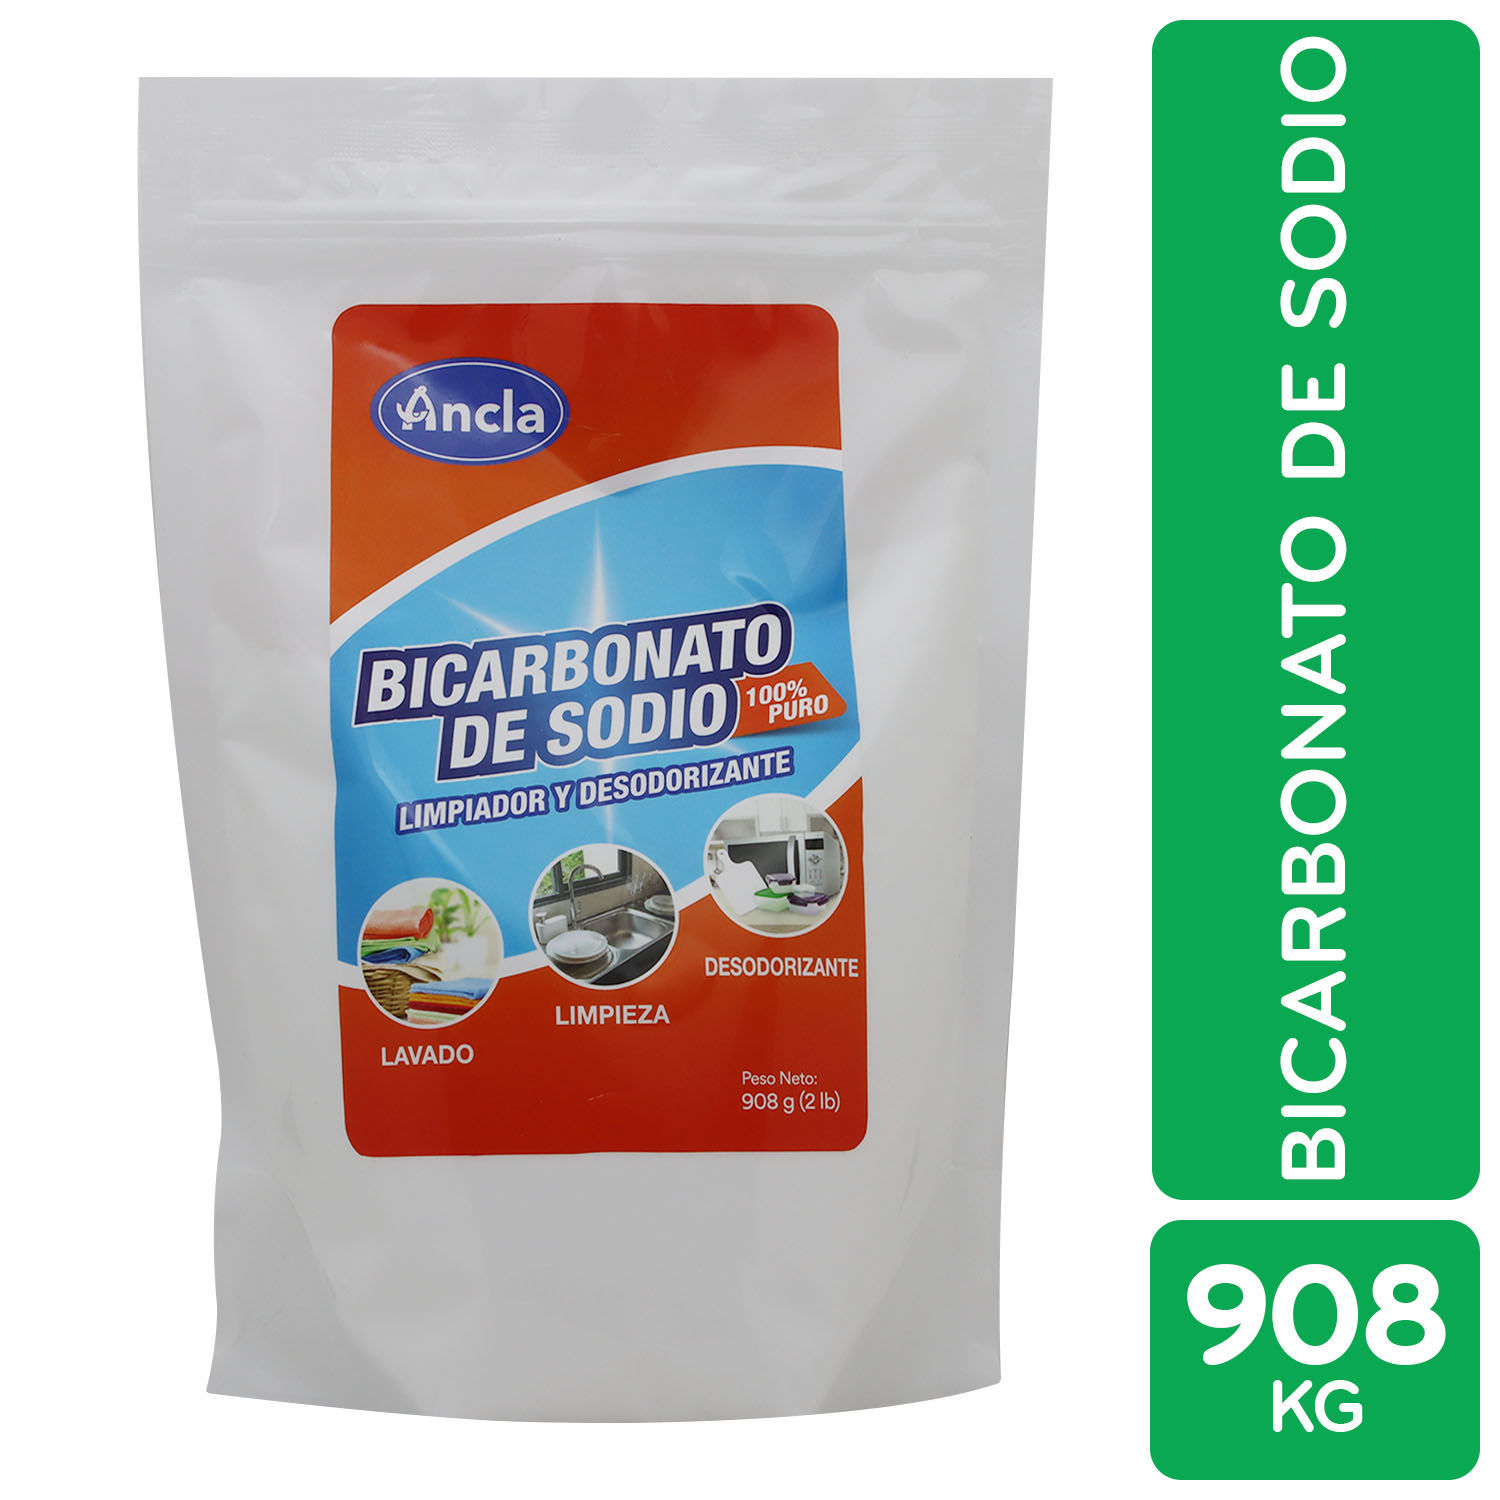 Comprar Bicarbonato De Sodio Ancla Doypack - 908g, Walmart Costa Rica -  Maxi Palí